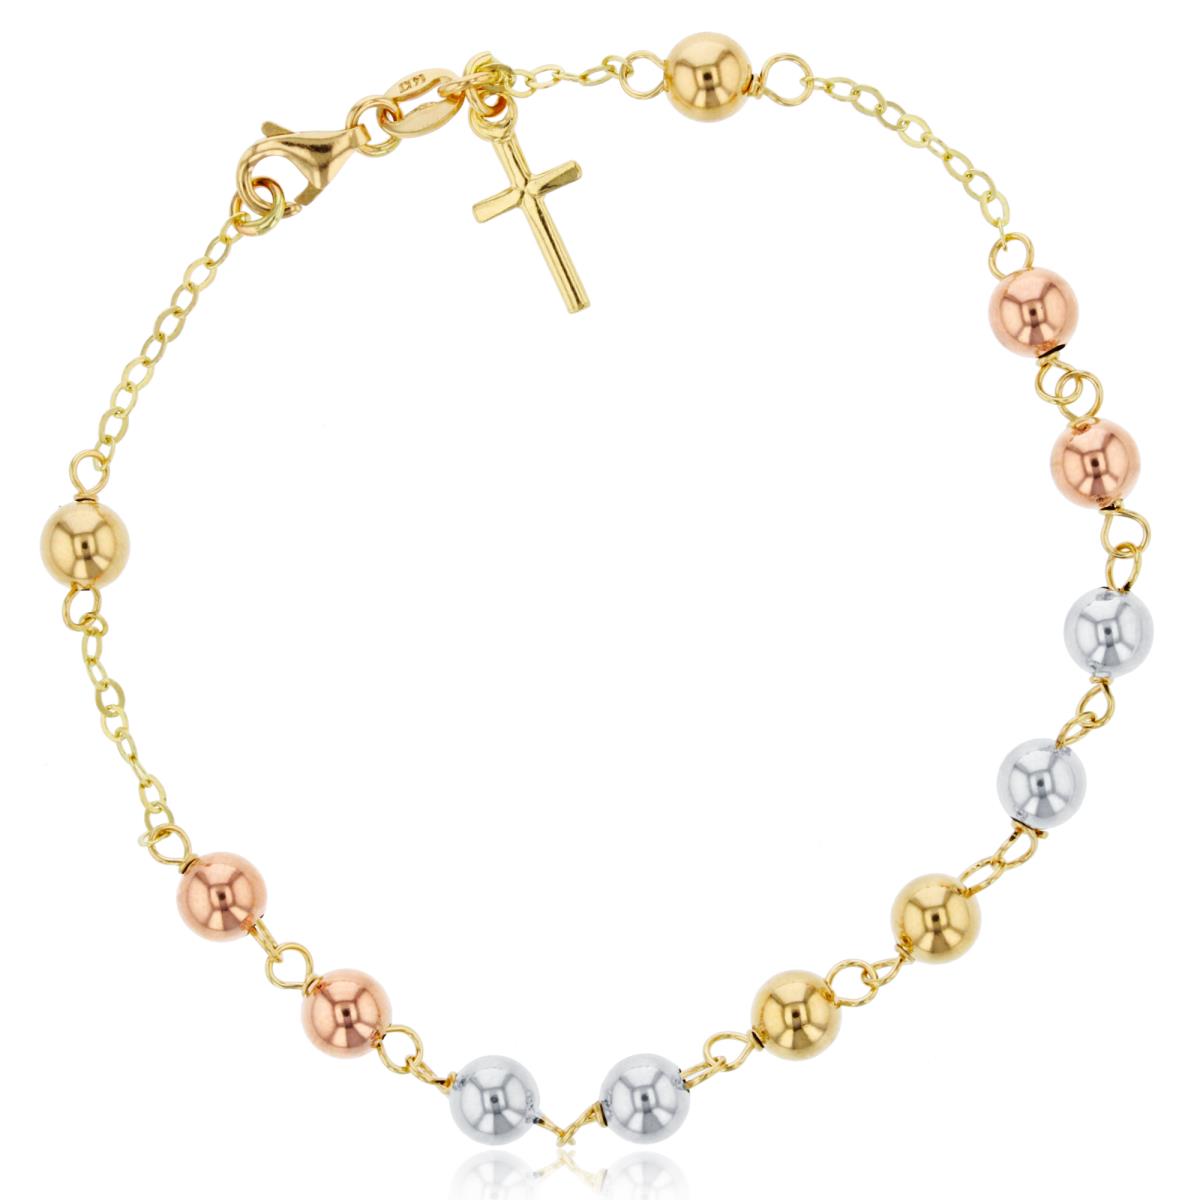 10K Tri-Color Gold 5mm Polished Beads Dangling Cross 7.25" Bracelet